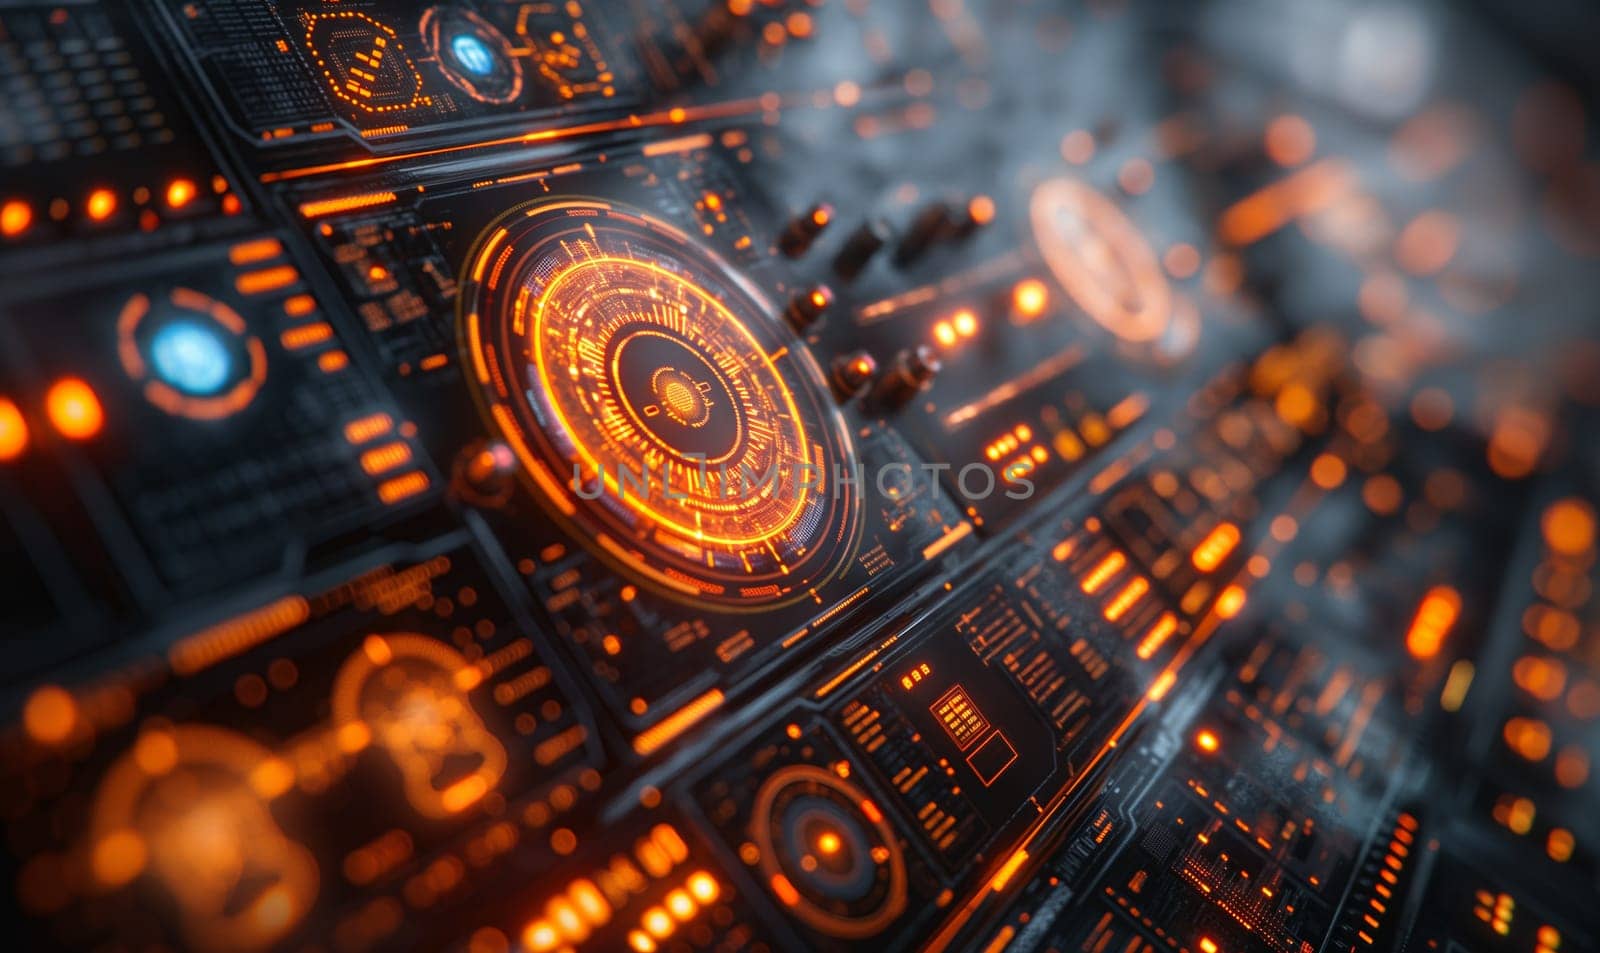 Futuristic Computer With Orange Lights. by Fischeron